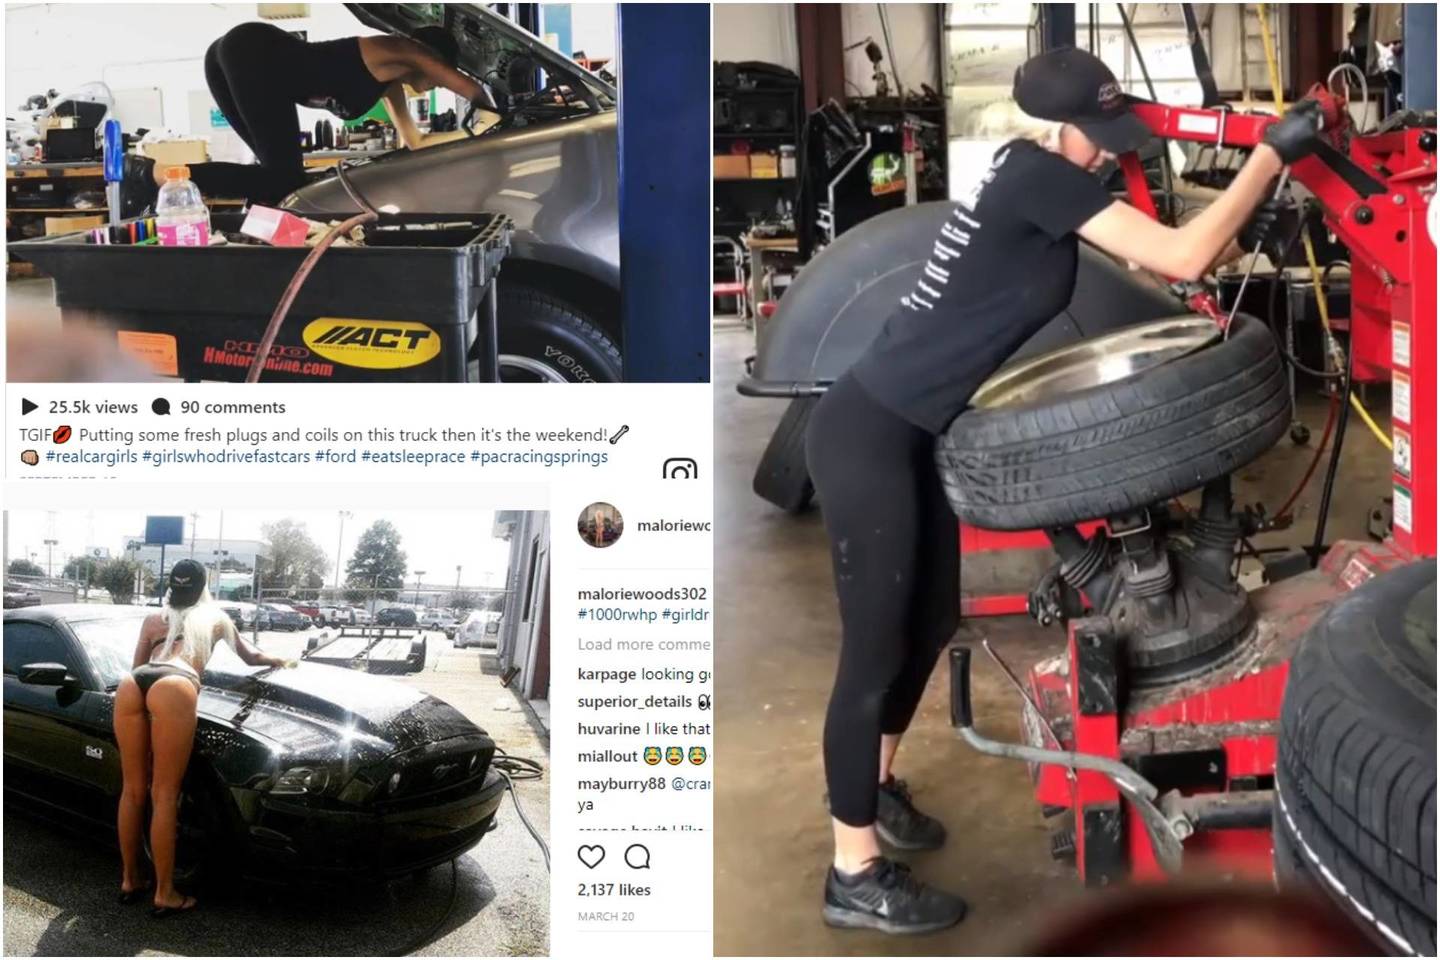 Malorie Woods dirba automobilių servise ir kasdien vairuoja 1000 AG galios „Ford Mustang“.<br>Instagram/maloriewoods302 ir ekrano nuotr.